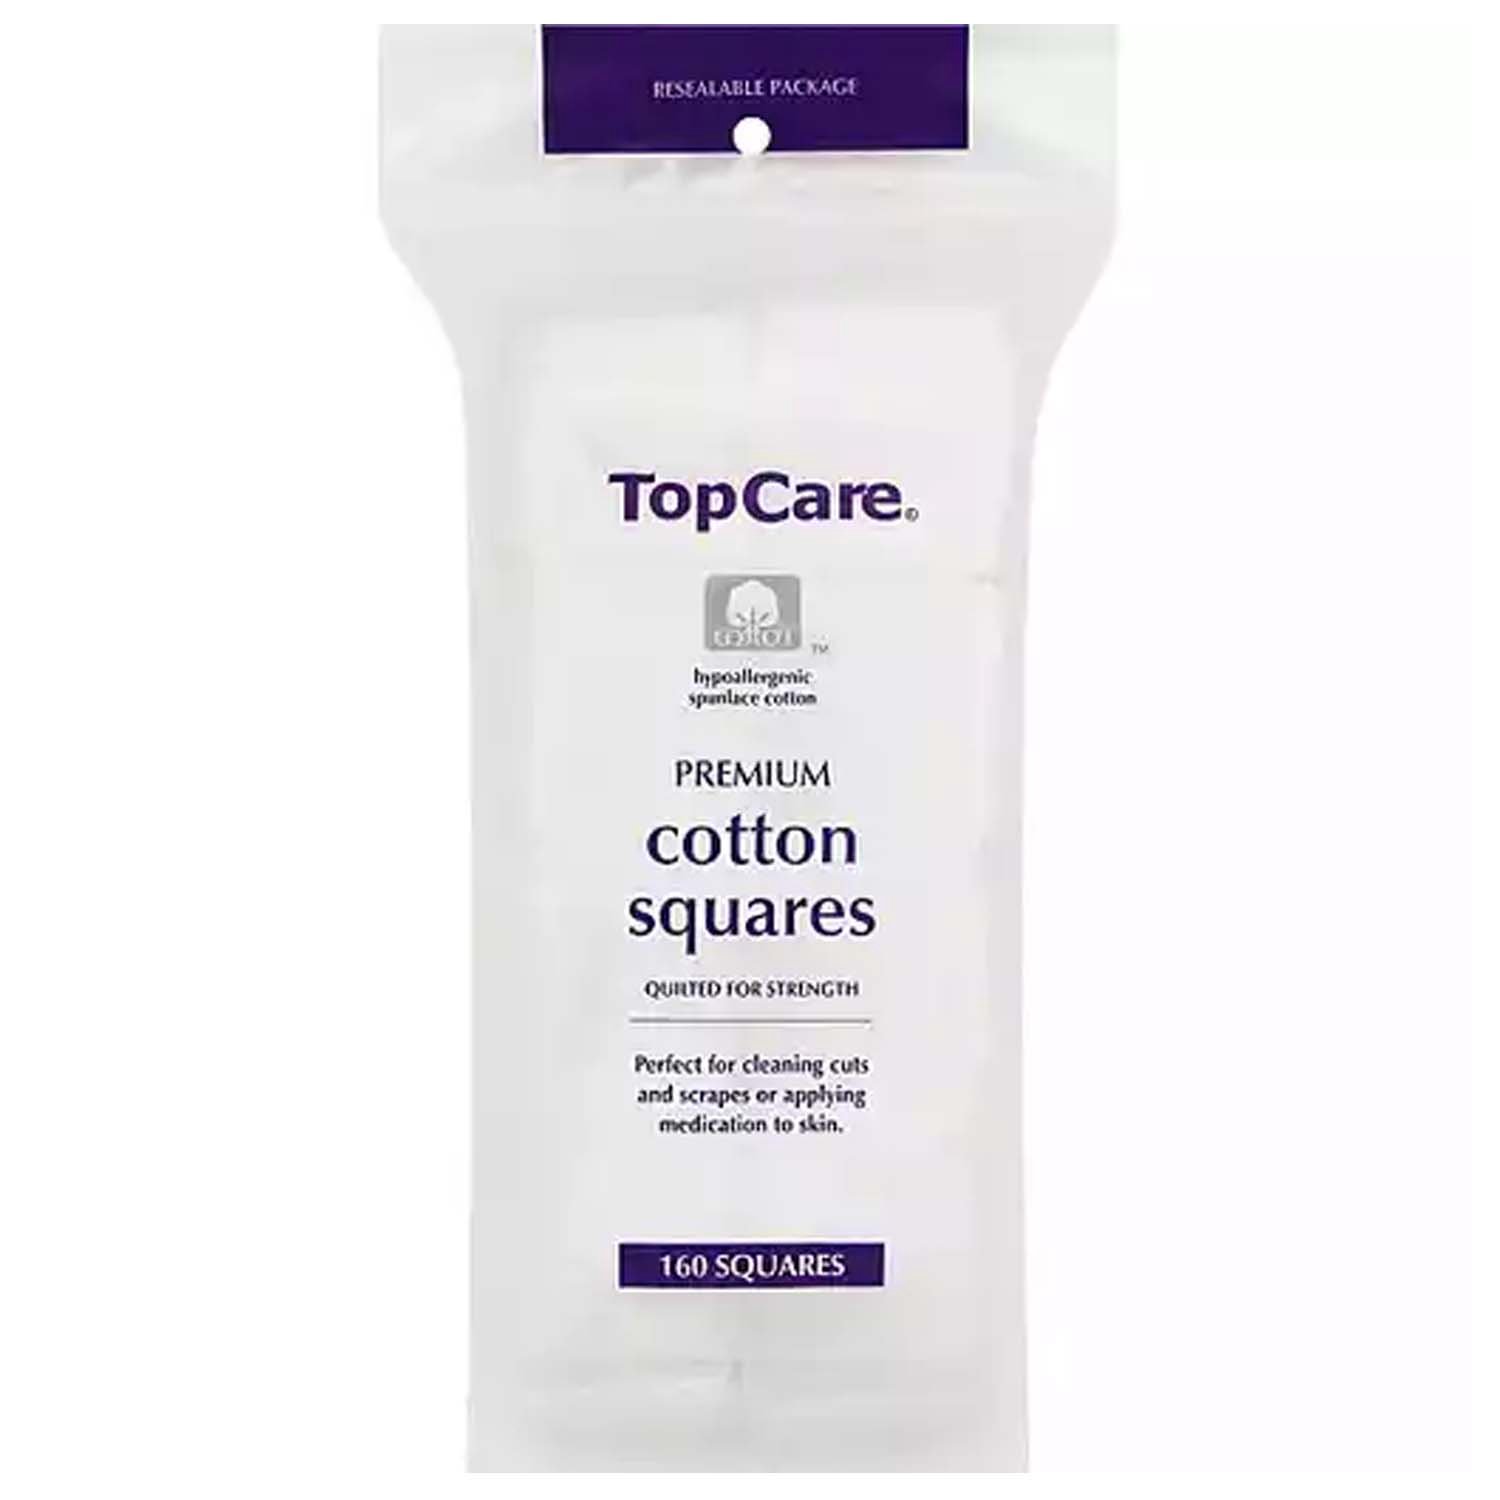 Top Care Premium Cotton Squares